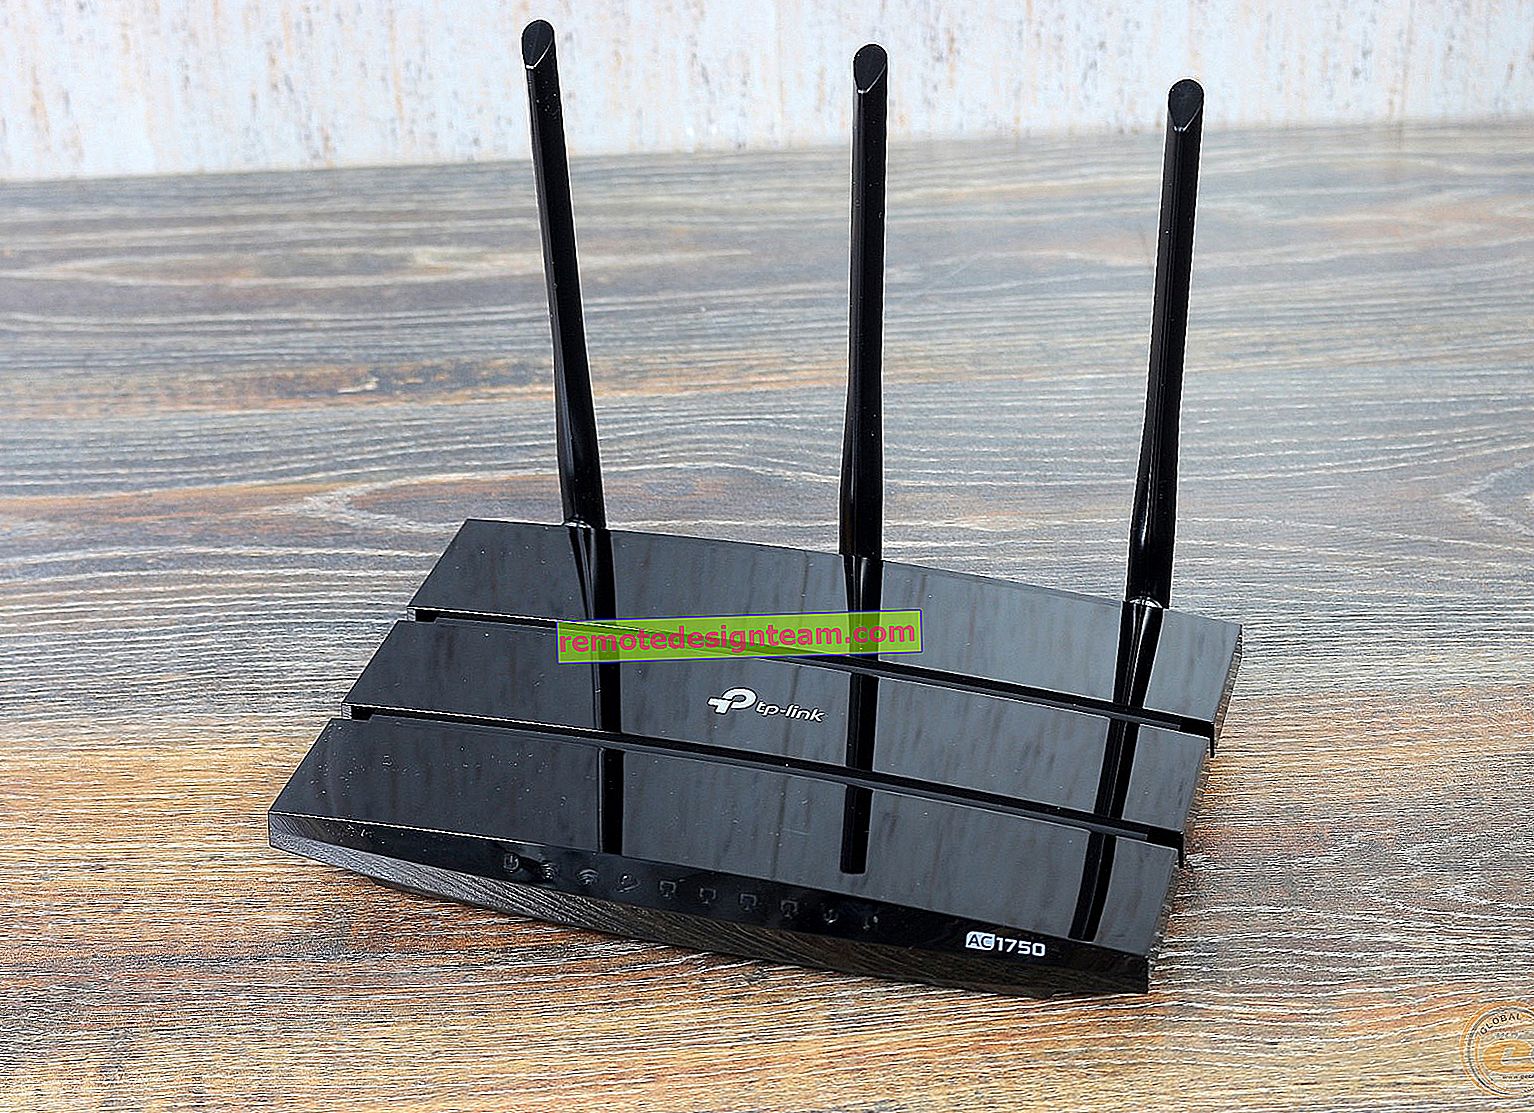 Comment configurer le routeur Wi-Fi TP-Link TL-WR845N?